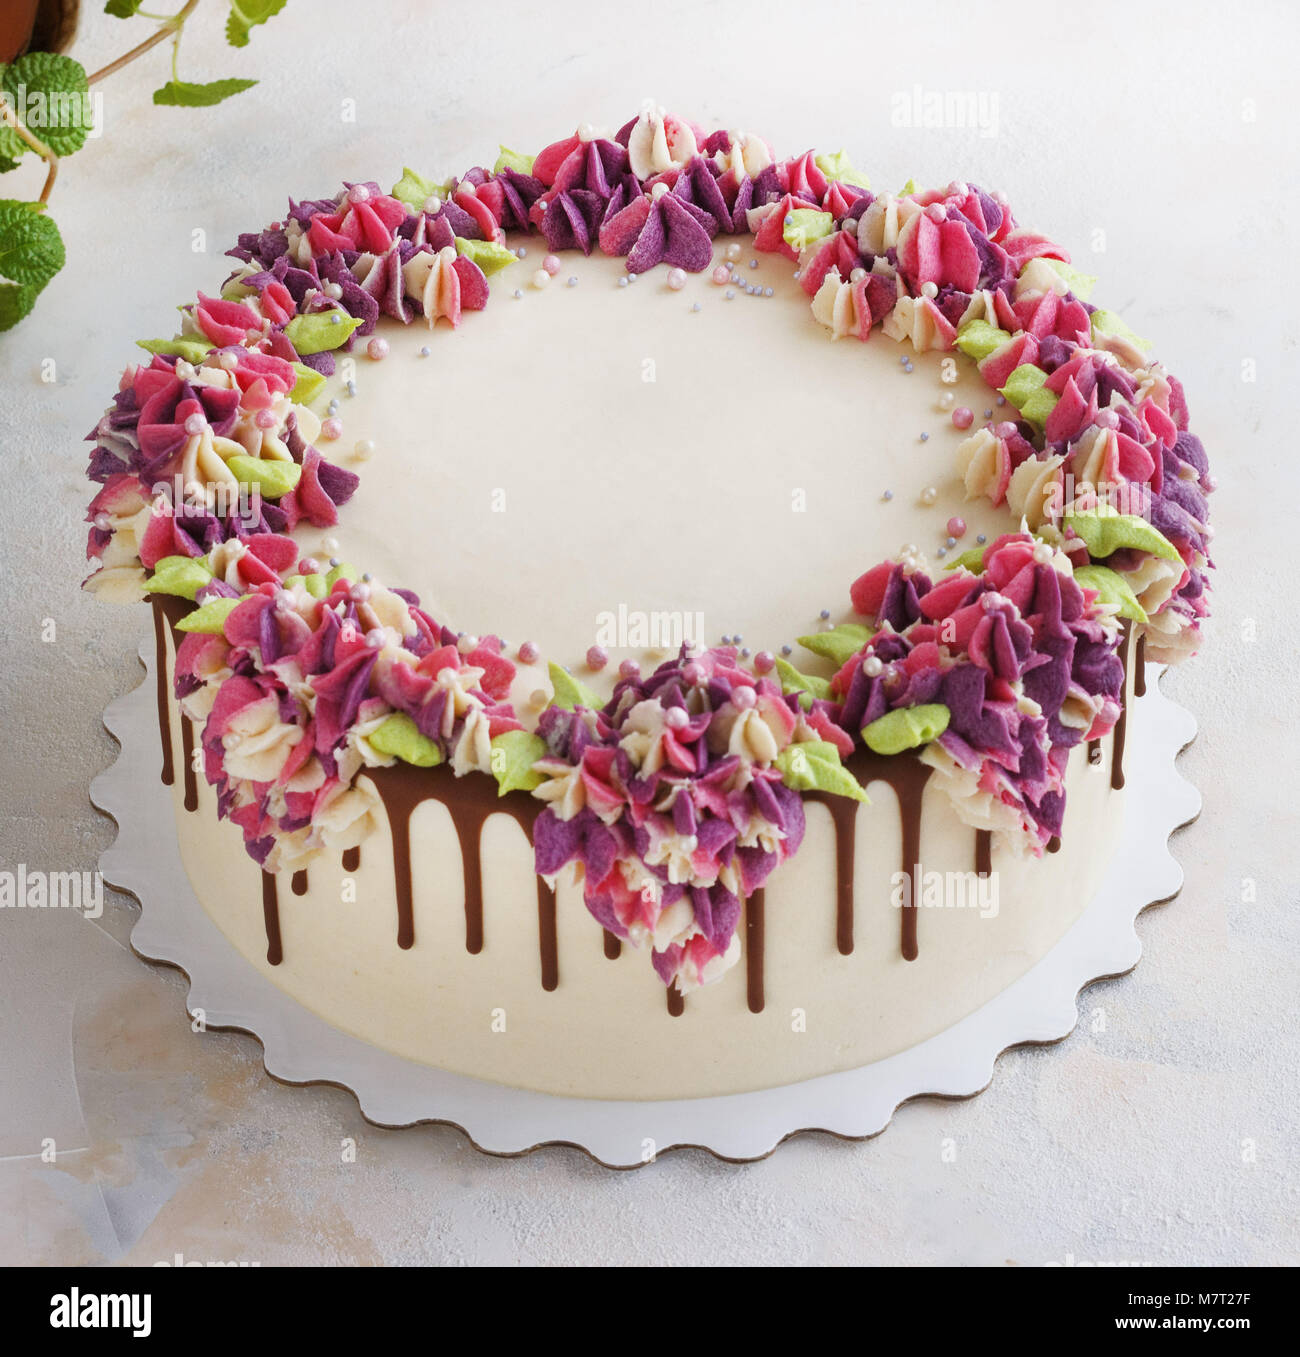 Gâteau de fête avec des fleurs crème hydrangea sur fond clair Banque D'Images